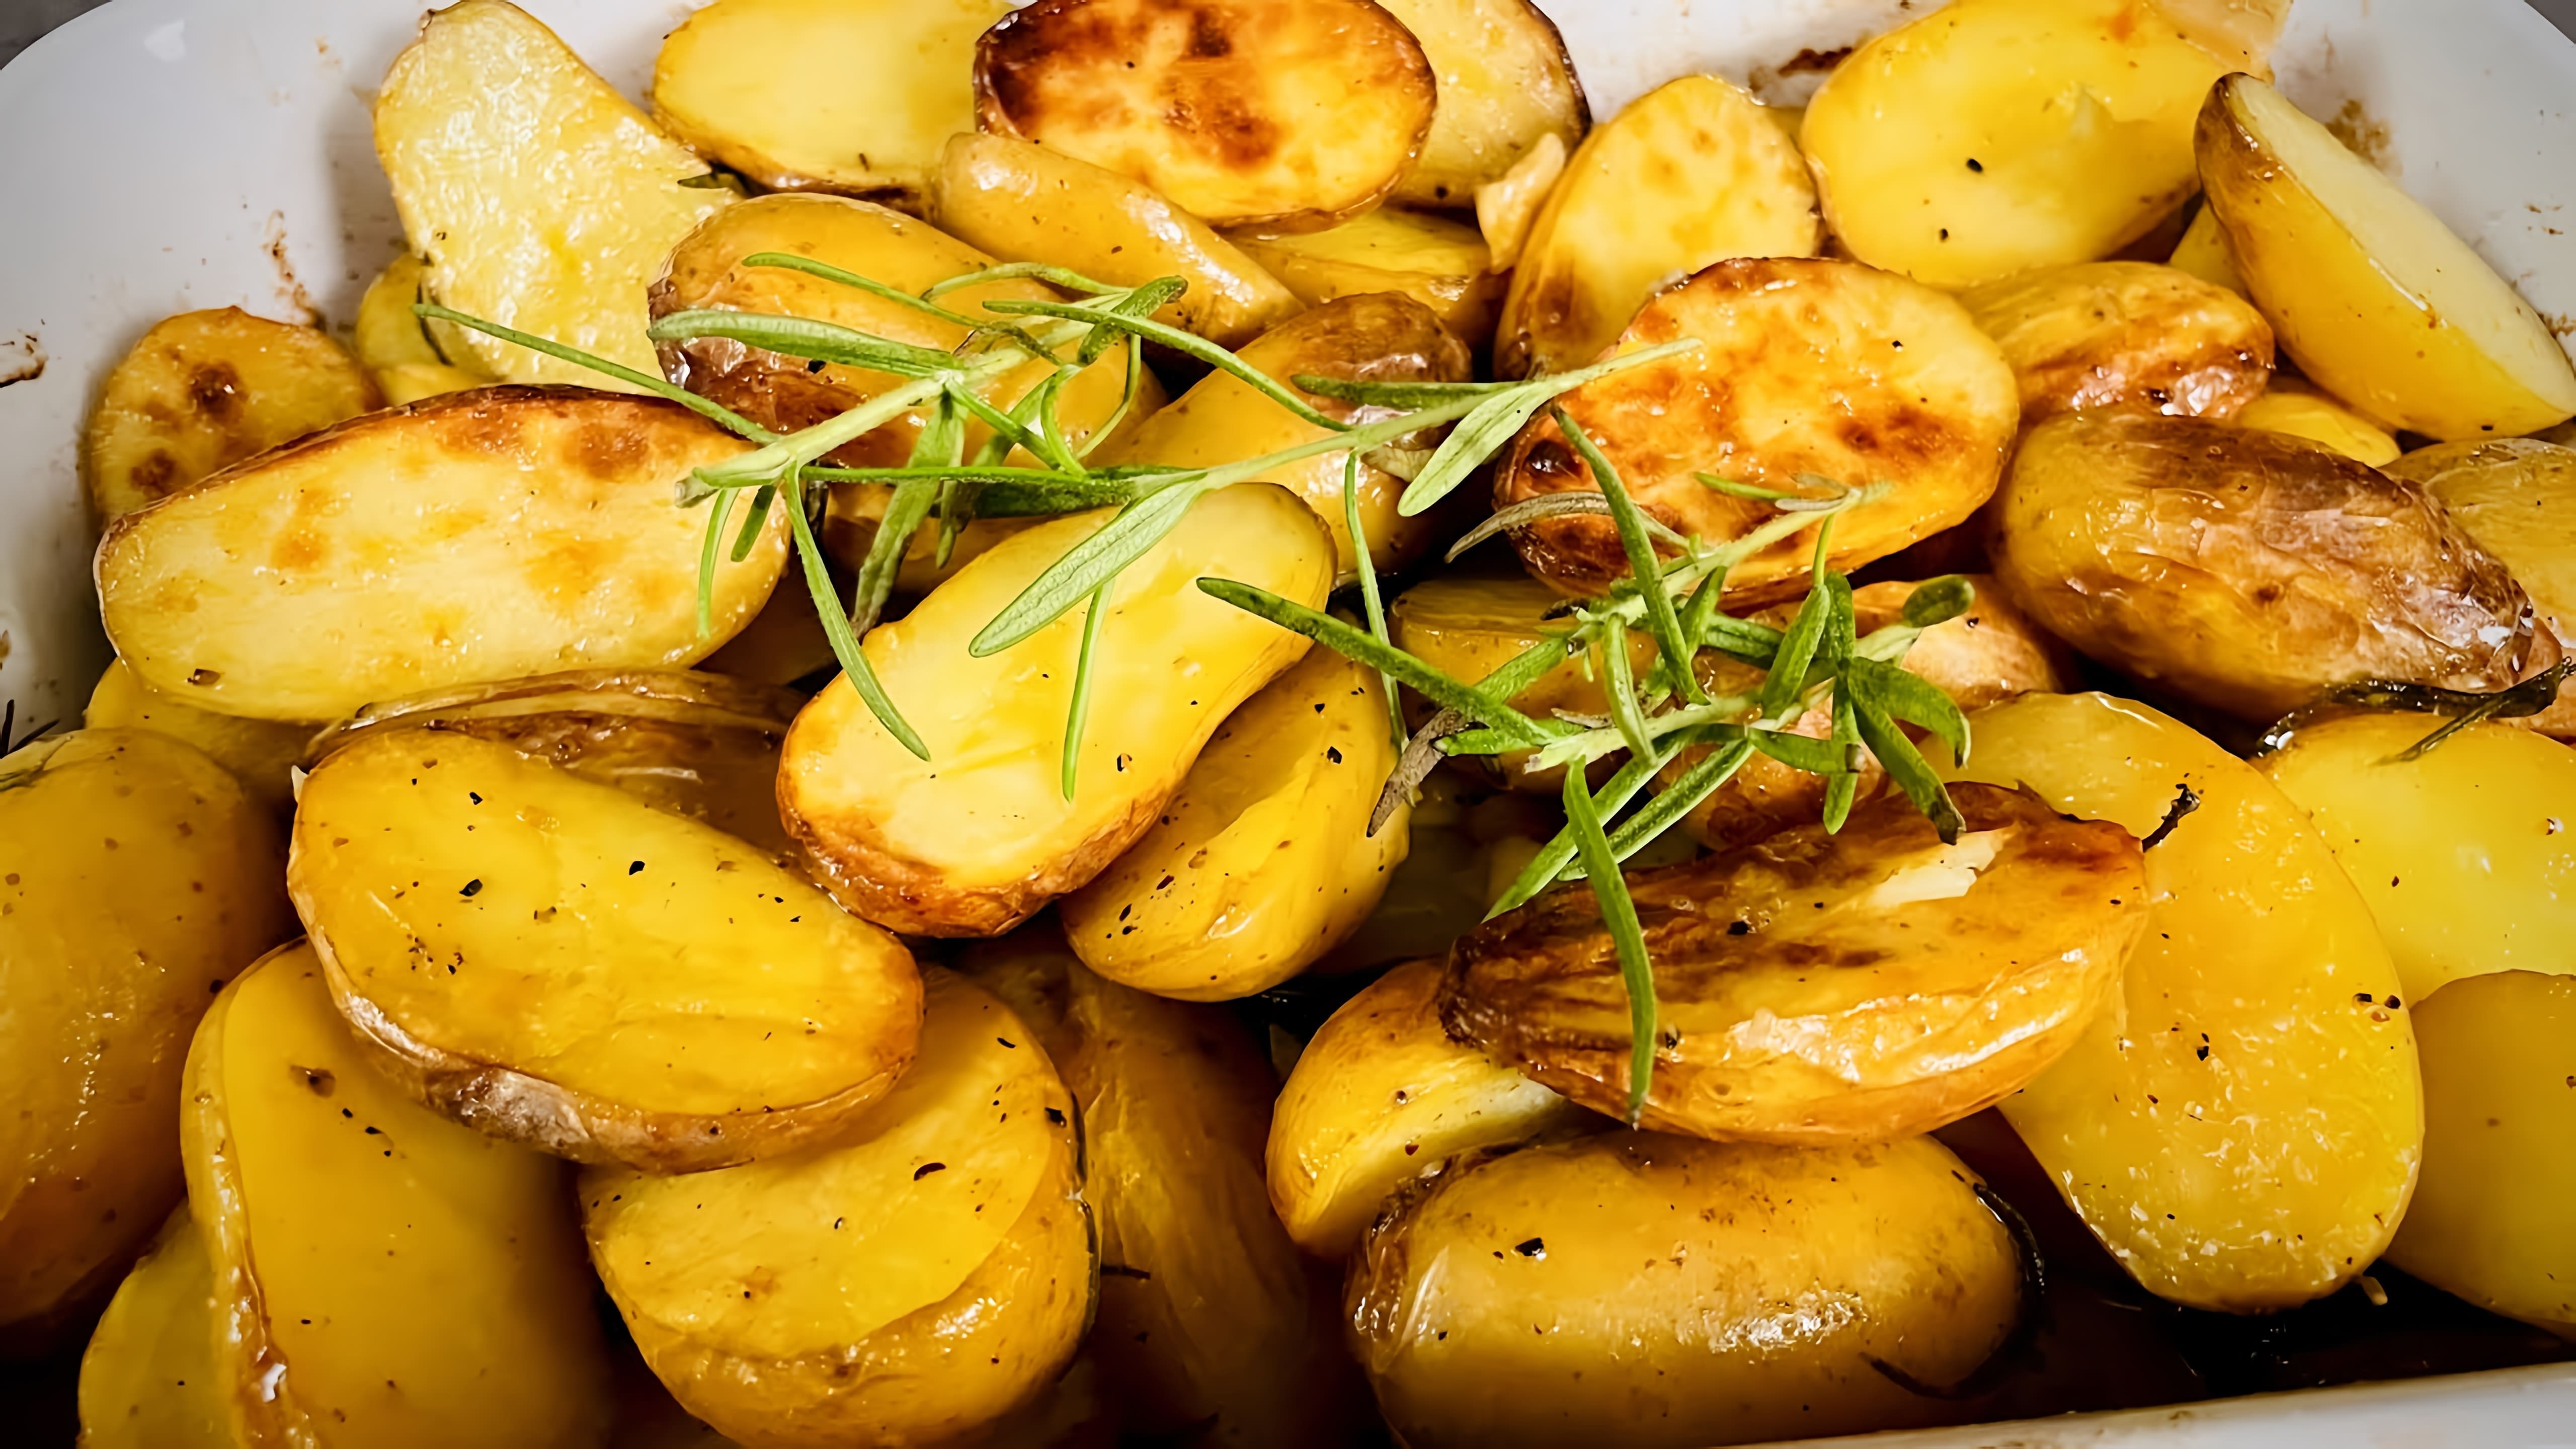 В этом видео демонстрируется рецепт приготовления картофеля с розмарином в духовке